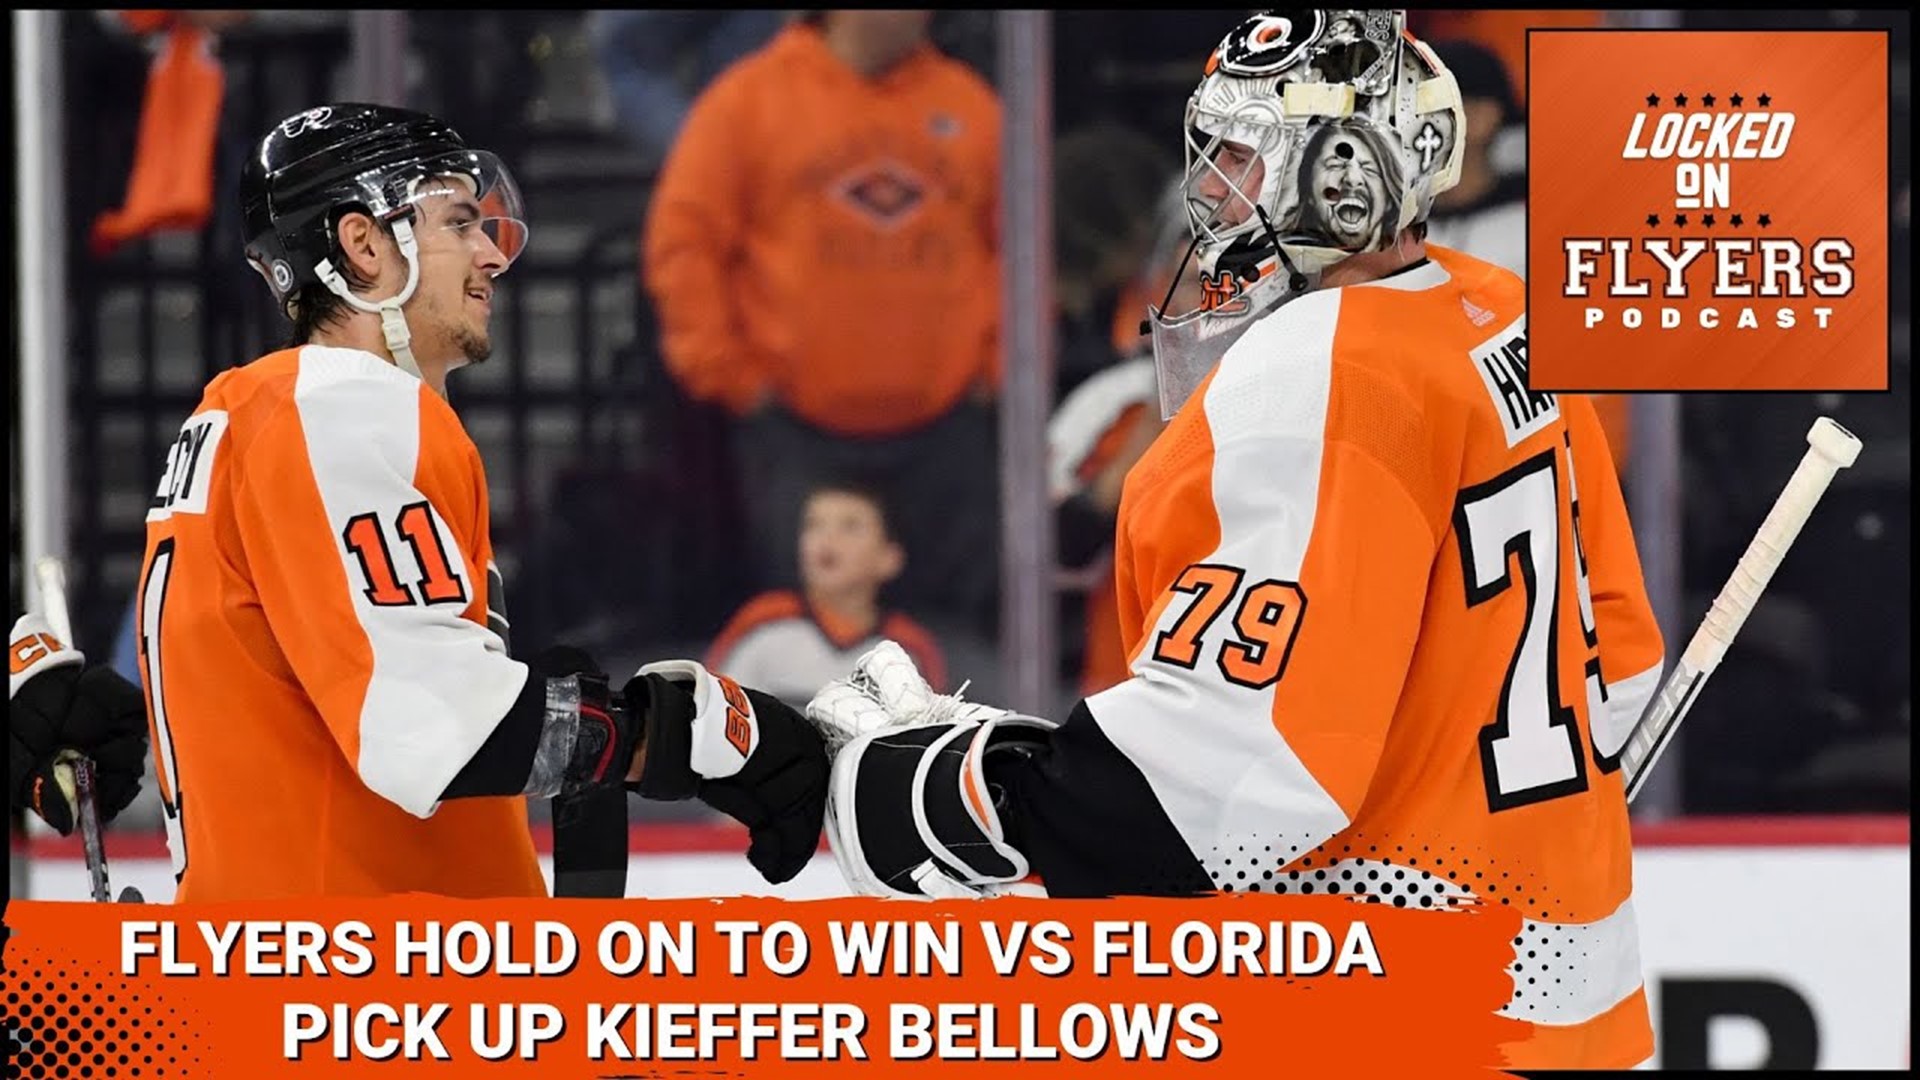 Flyers 'find a way,' beat Devils 5-2 in season opener